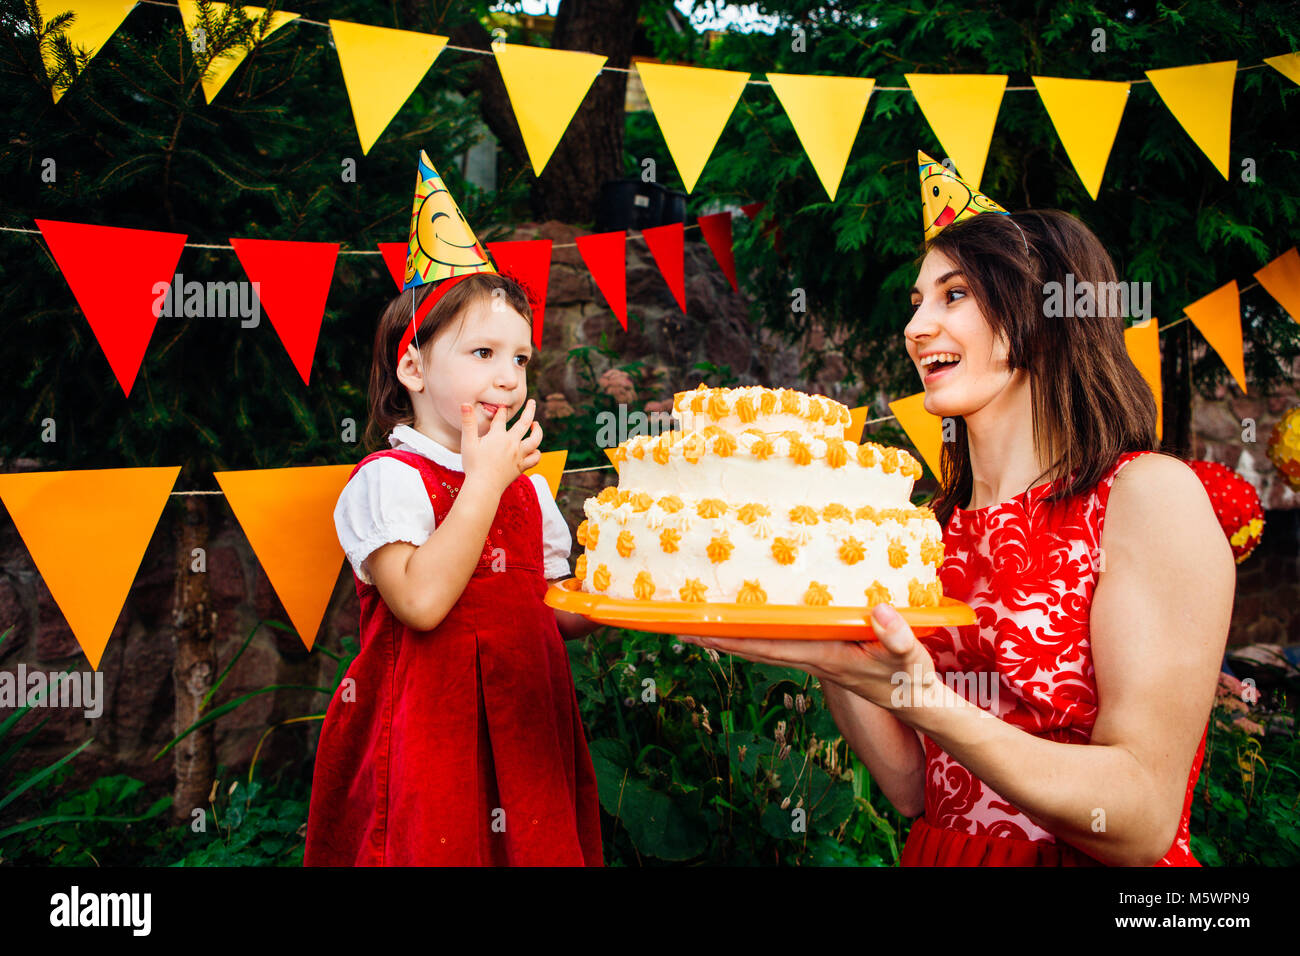 Fête pour les enfants et des gâteaux. Un petit enfant d'un funny girl tente de fabricants un grand gâteau de deux étages près de maman qui tient dans ses mains. Contre l'arrière Banque D'Images